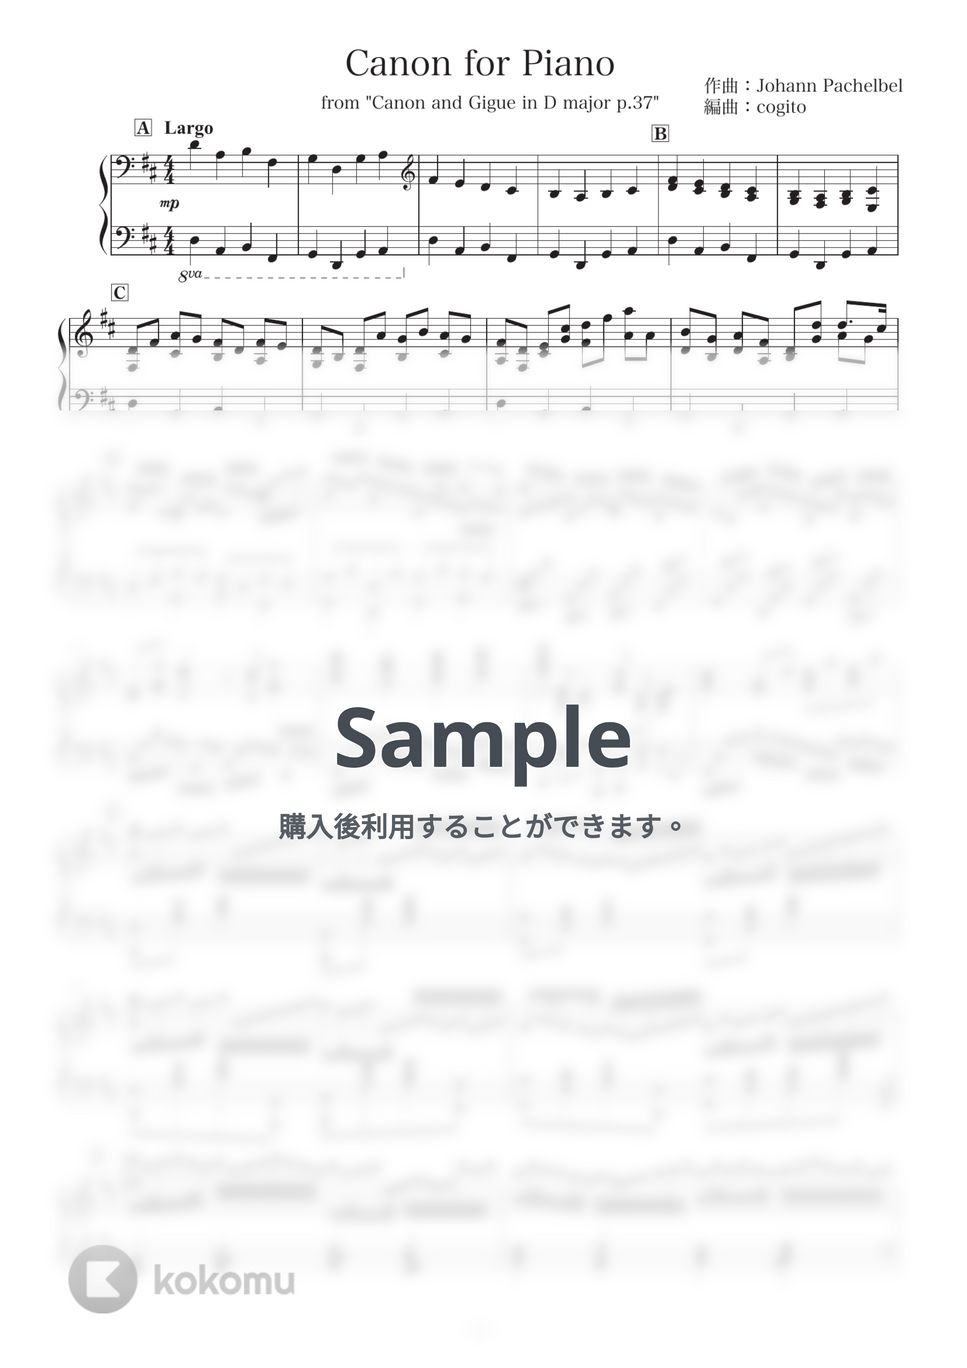 ヨハン・パッヘルベル - 【卒業式・式典用】パッヘルベルのカノン ピアノアレンジ (卒業式/ピアノ/BGM) by cogito